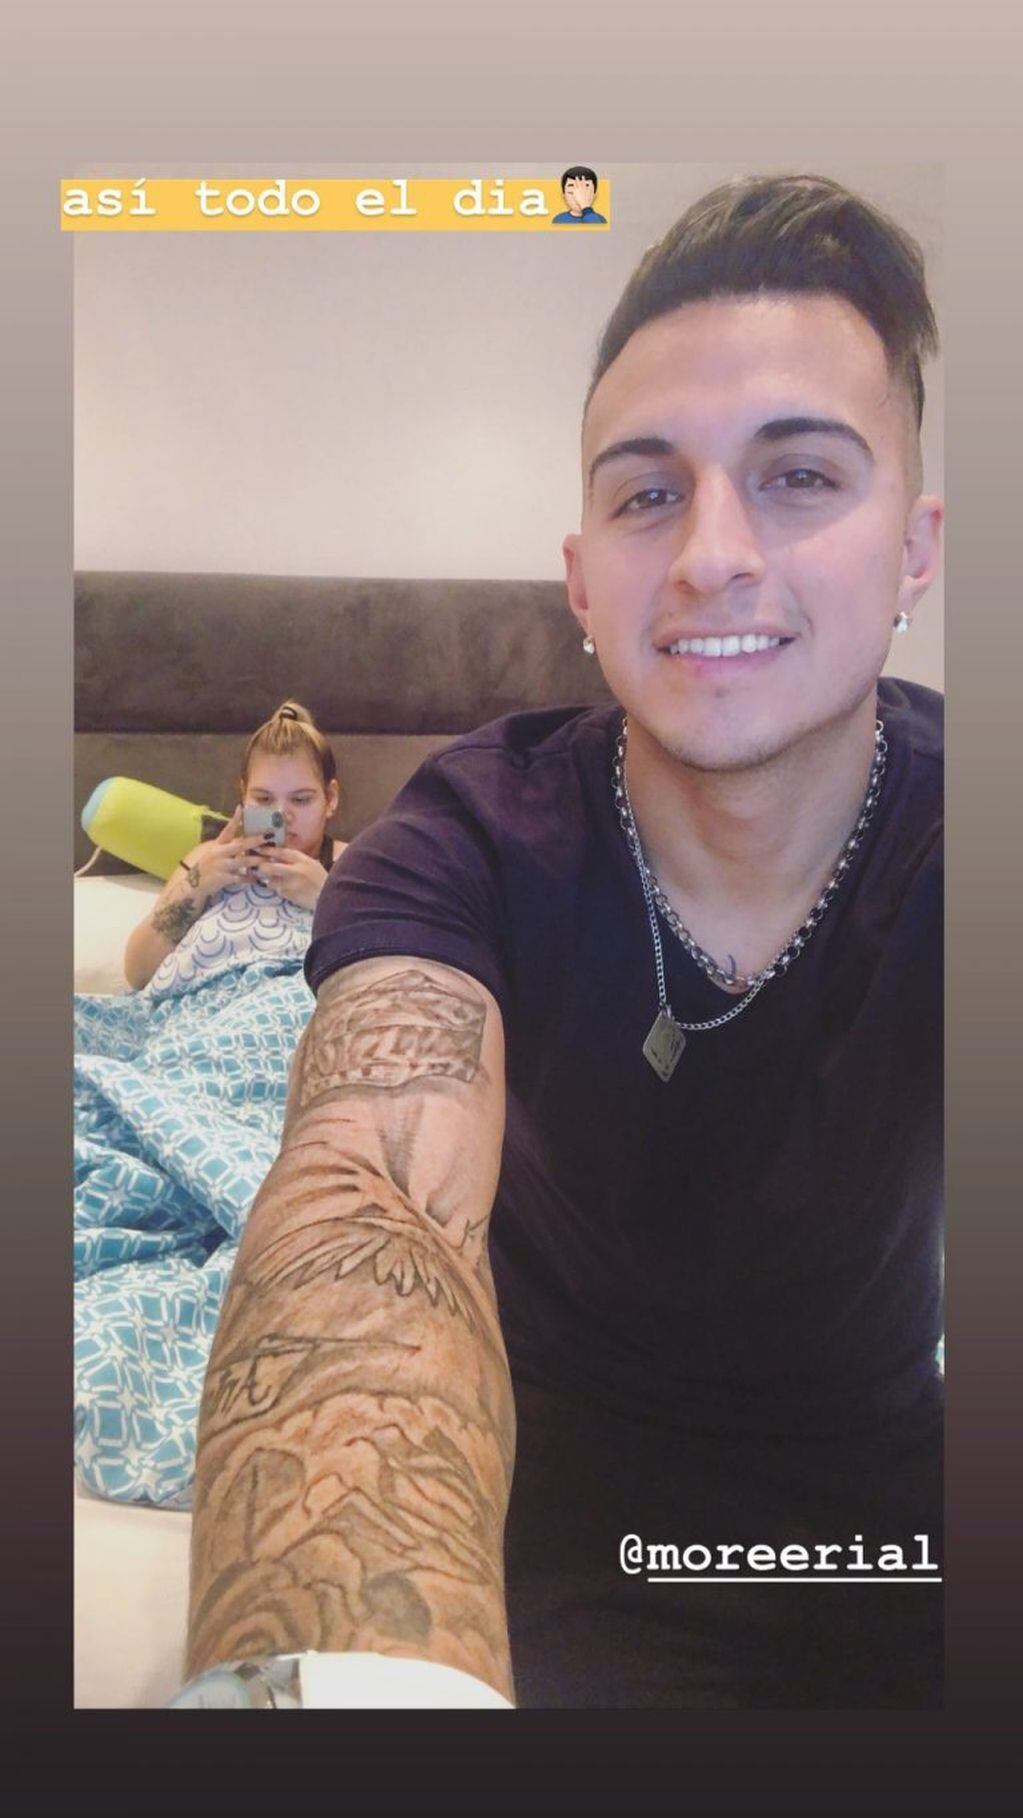 Enrique Sánchez escrachó a Morena Rial con una foto desde la cama (Foto: Instagram/ enrique.sanchez28)